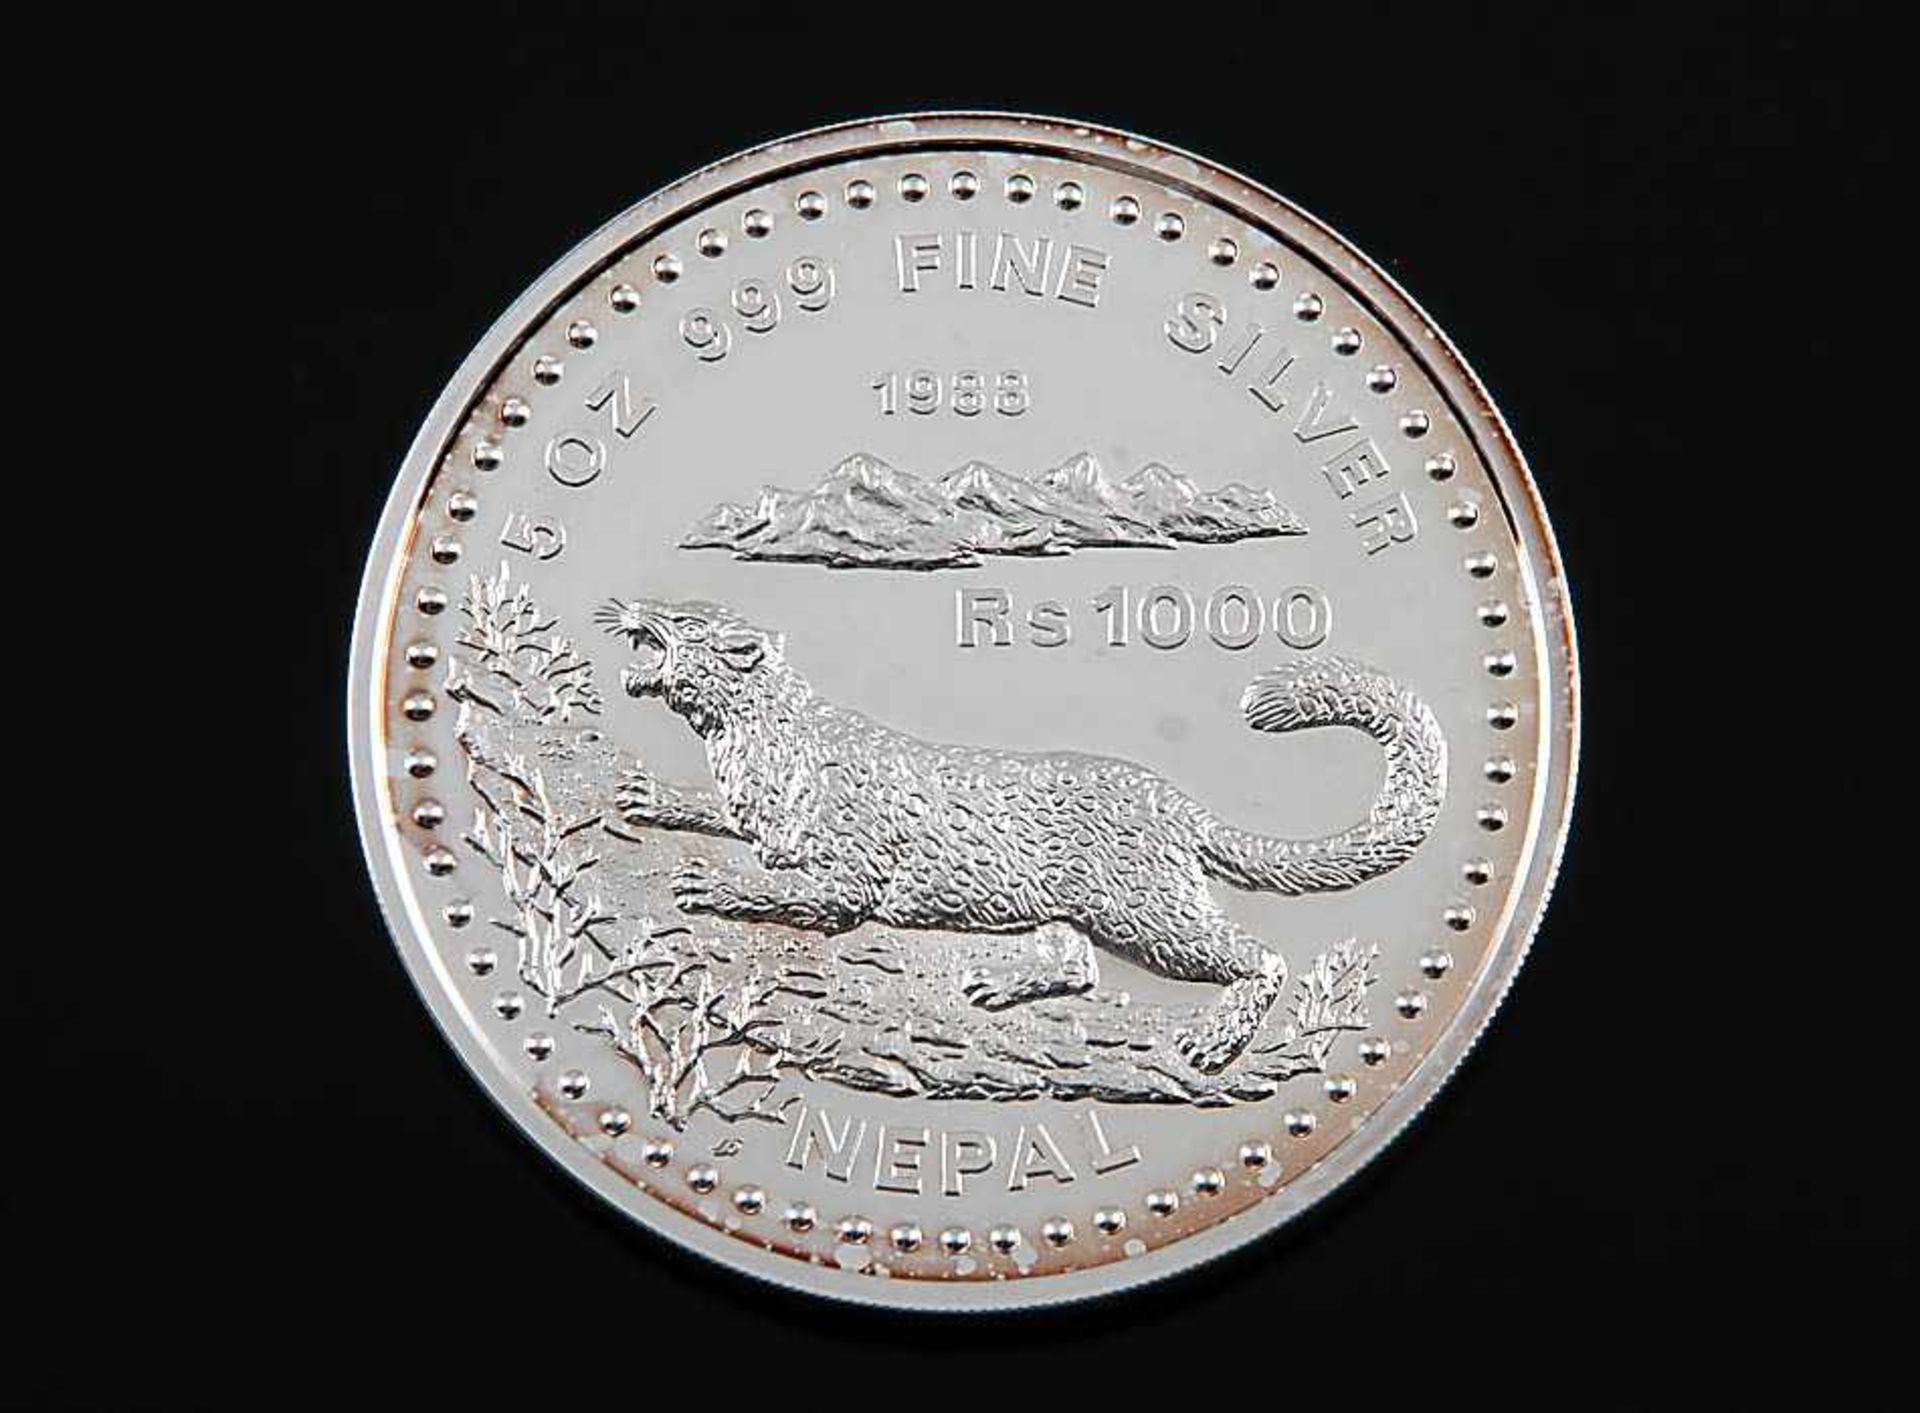 SilbermünzeNepal, 1988. 1000 Rupien Snow Leopard. 999er Silber. D 6,5 cm. 157 g. Vorzüglicher